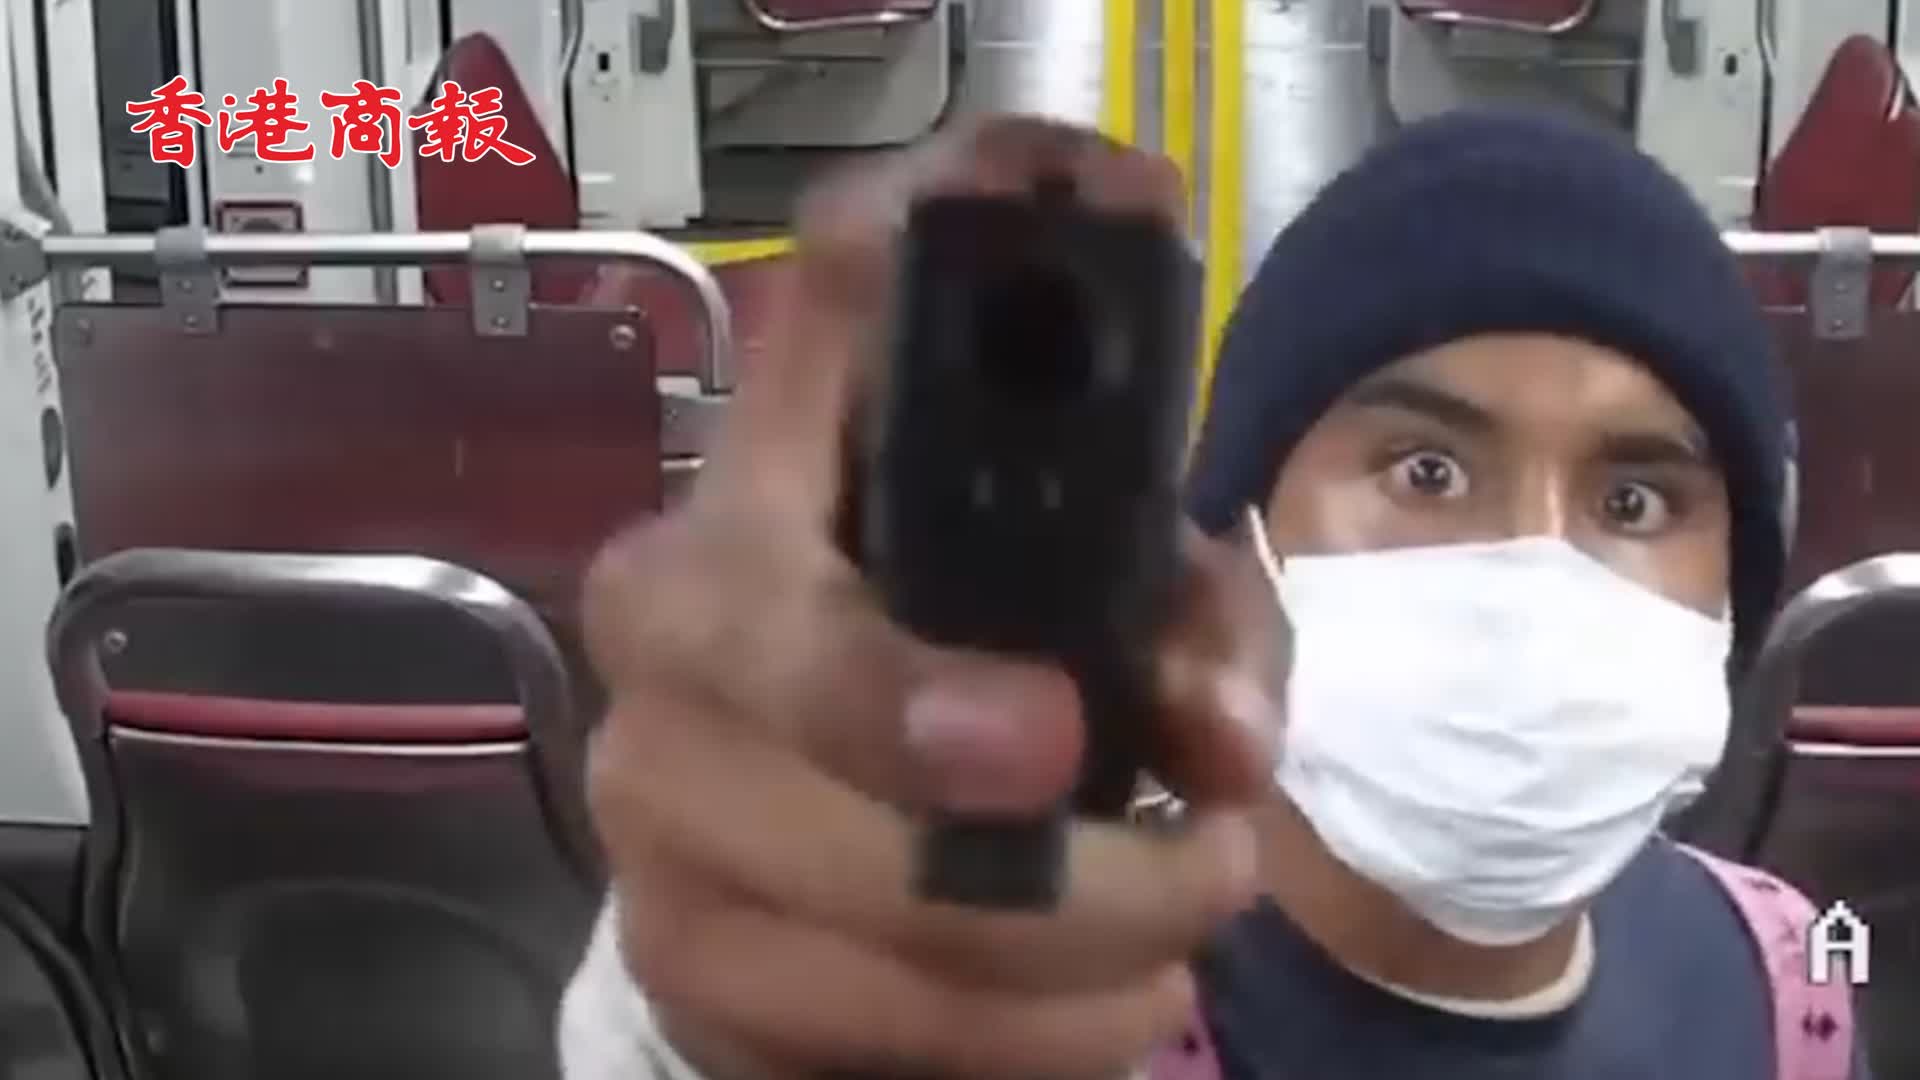 有片丨美一男子持槍在電車內來回搖晃 警方受威脅後將其擊斃